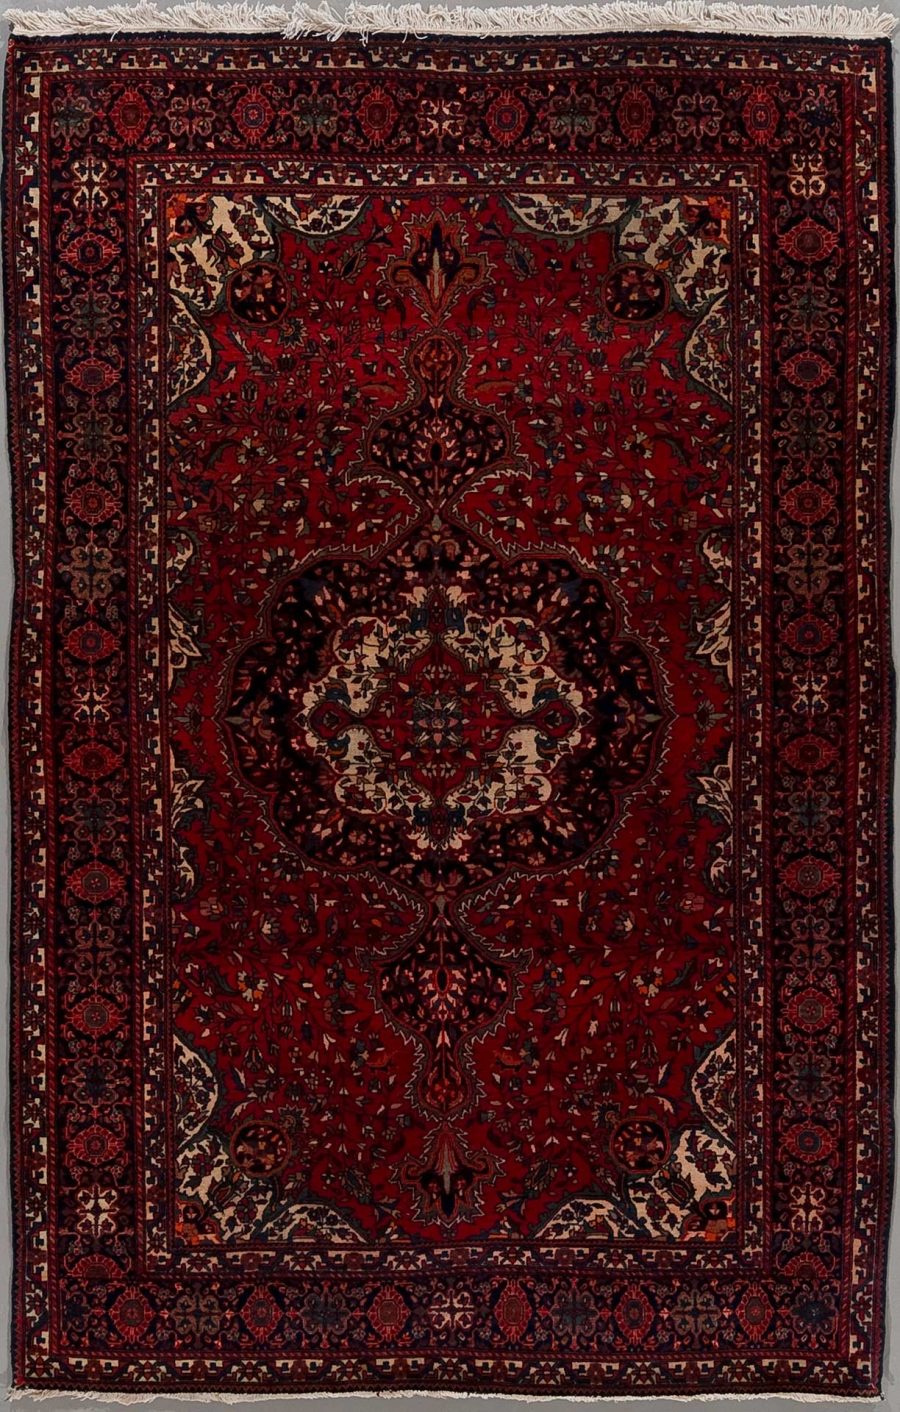 Traditioneller orientalischer Teppich mit komplexem Muster, das florale und geometrische Designs umfasst, in überwiegenden Rottönen mit Akzenten in Blau, Beige und Schwarz.